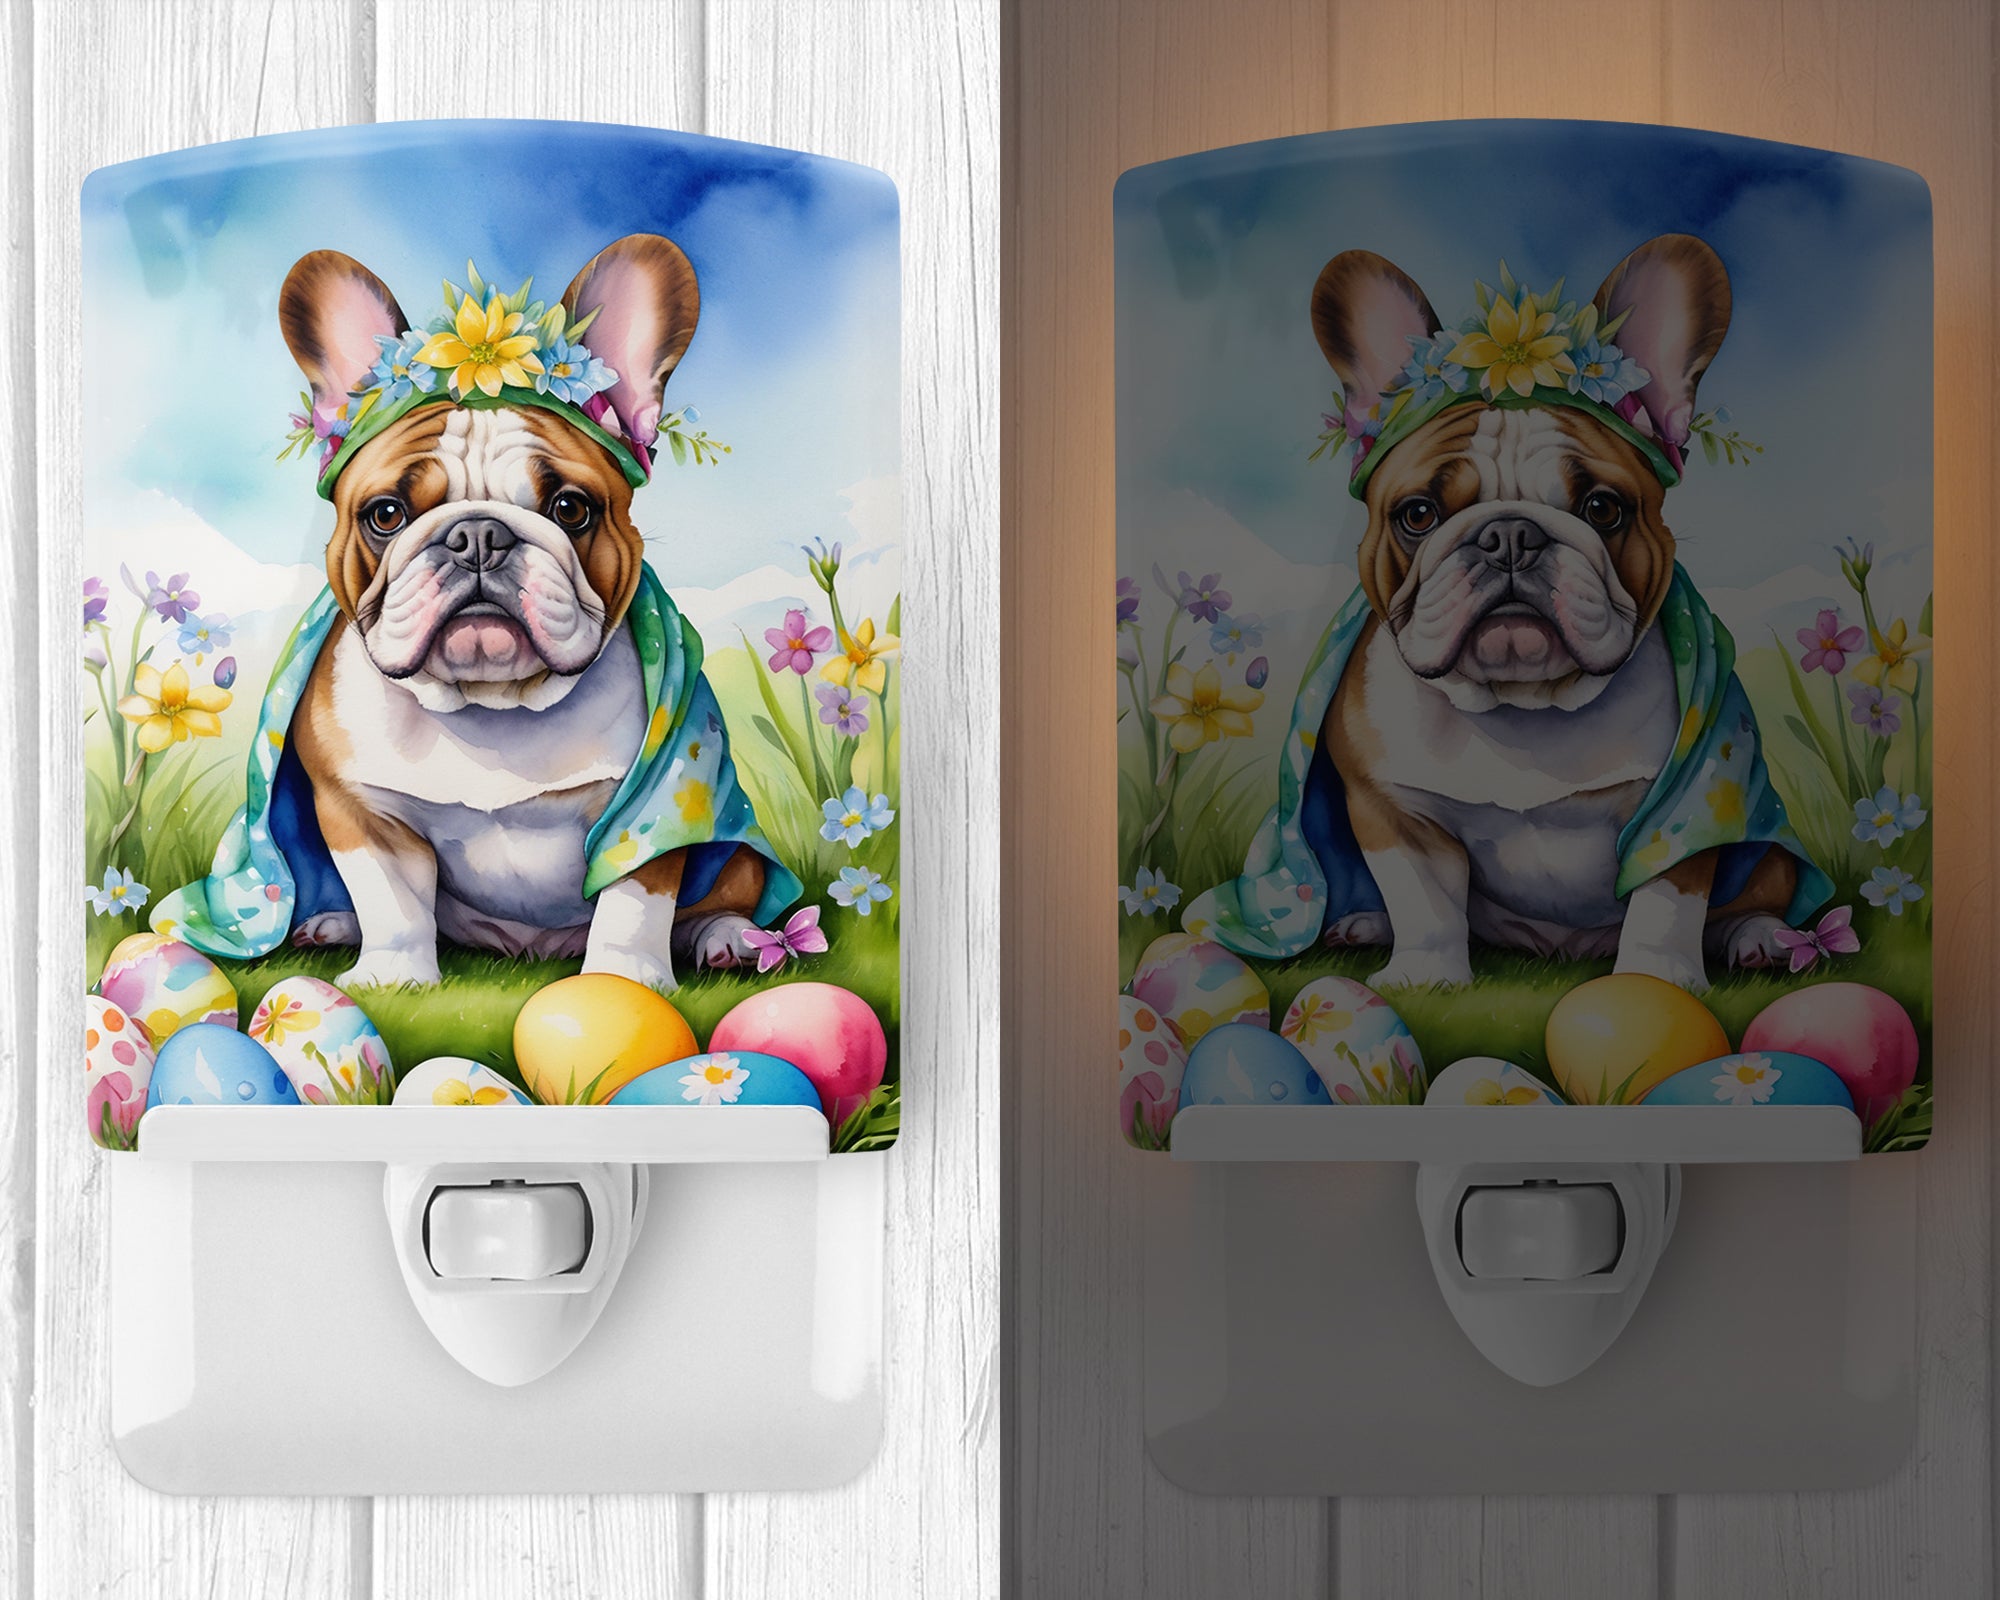 English Bulldog Easter Egg Hunt Ceramic Night Light